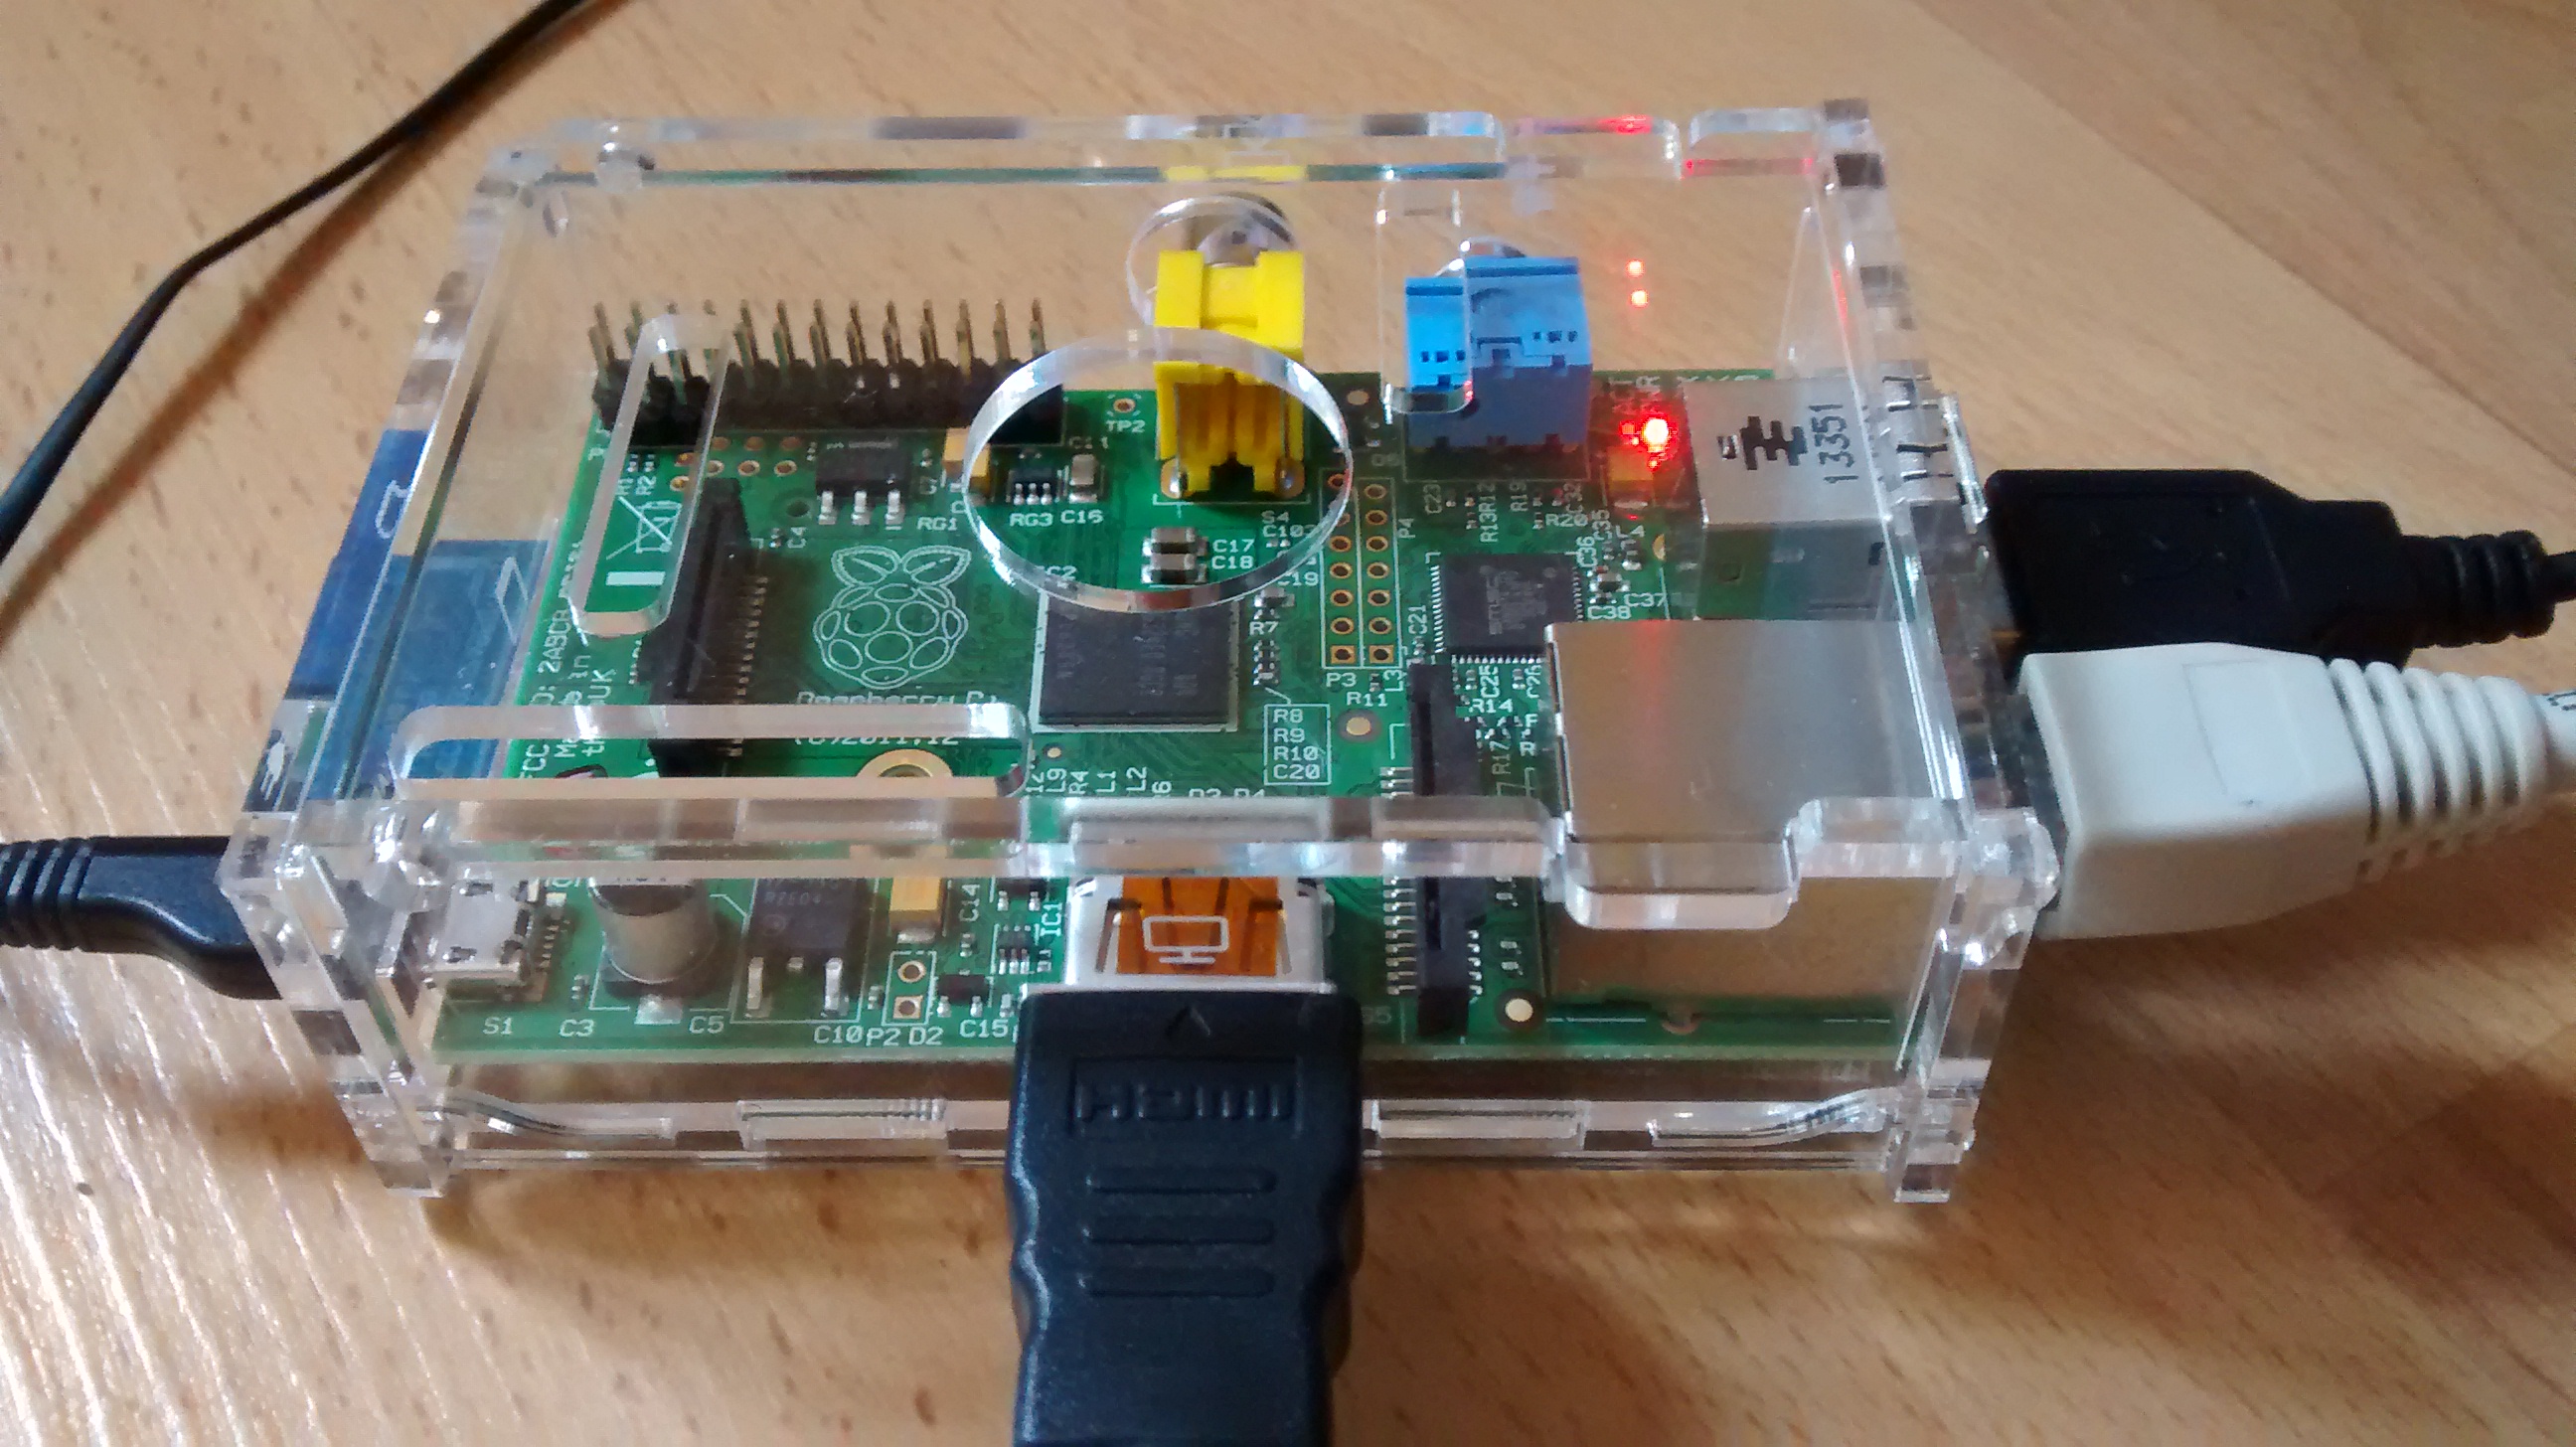 My Raspberry Pi running NetBSD